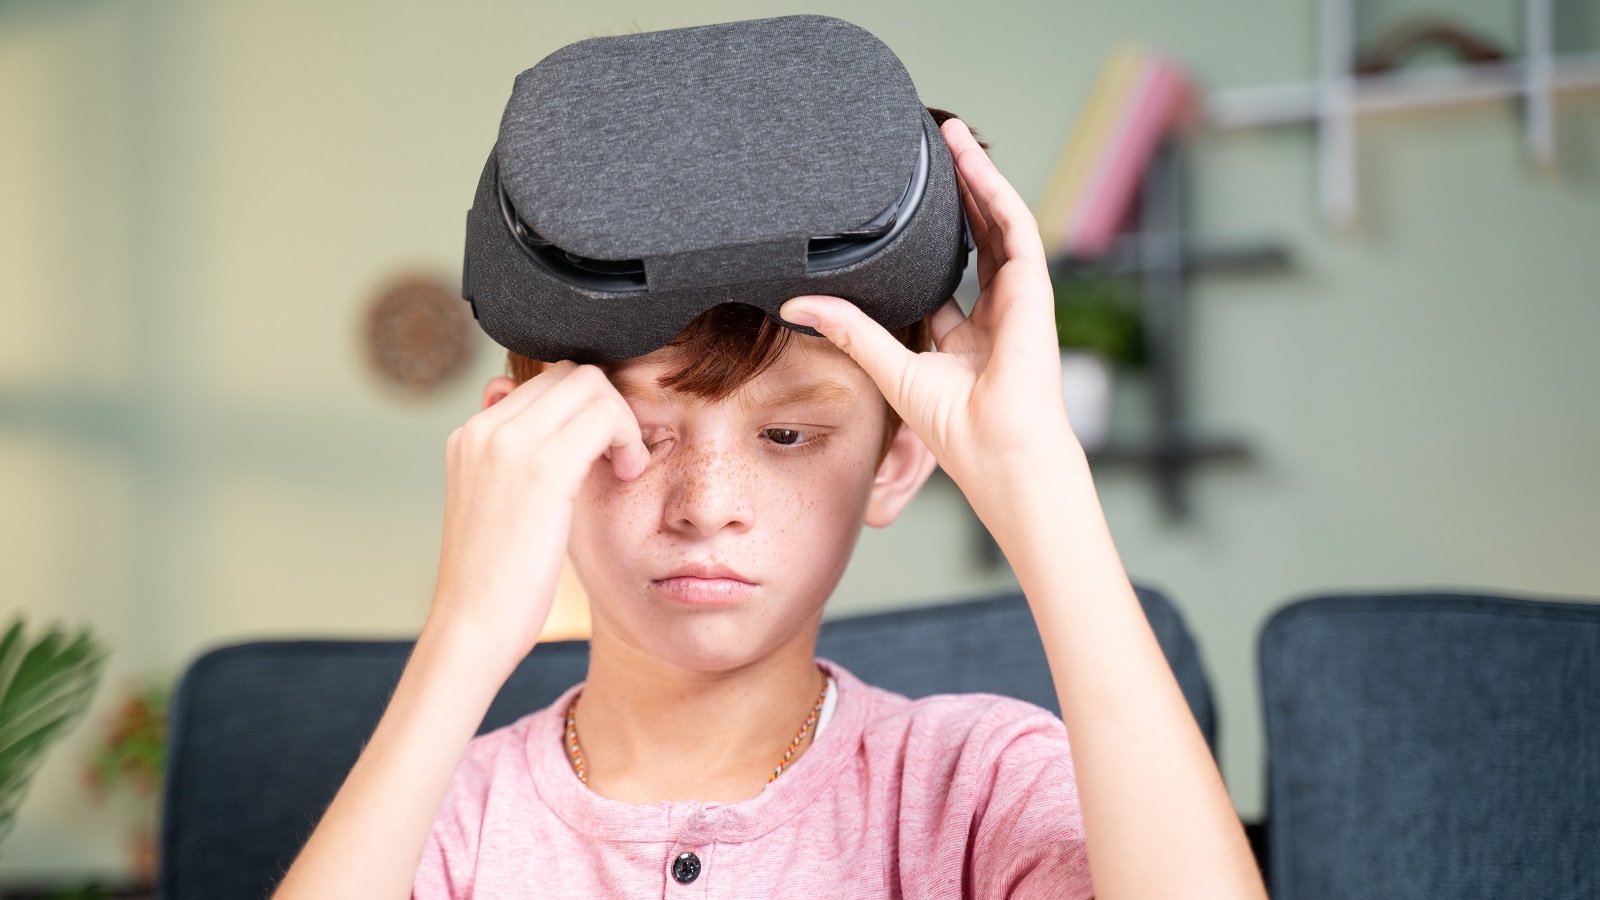 Bør barn og unge bruke VR-briller? | Barnevakten